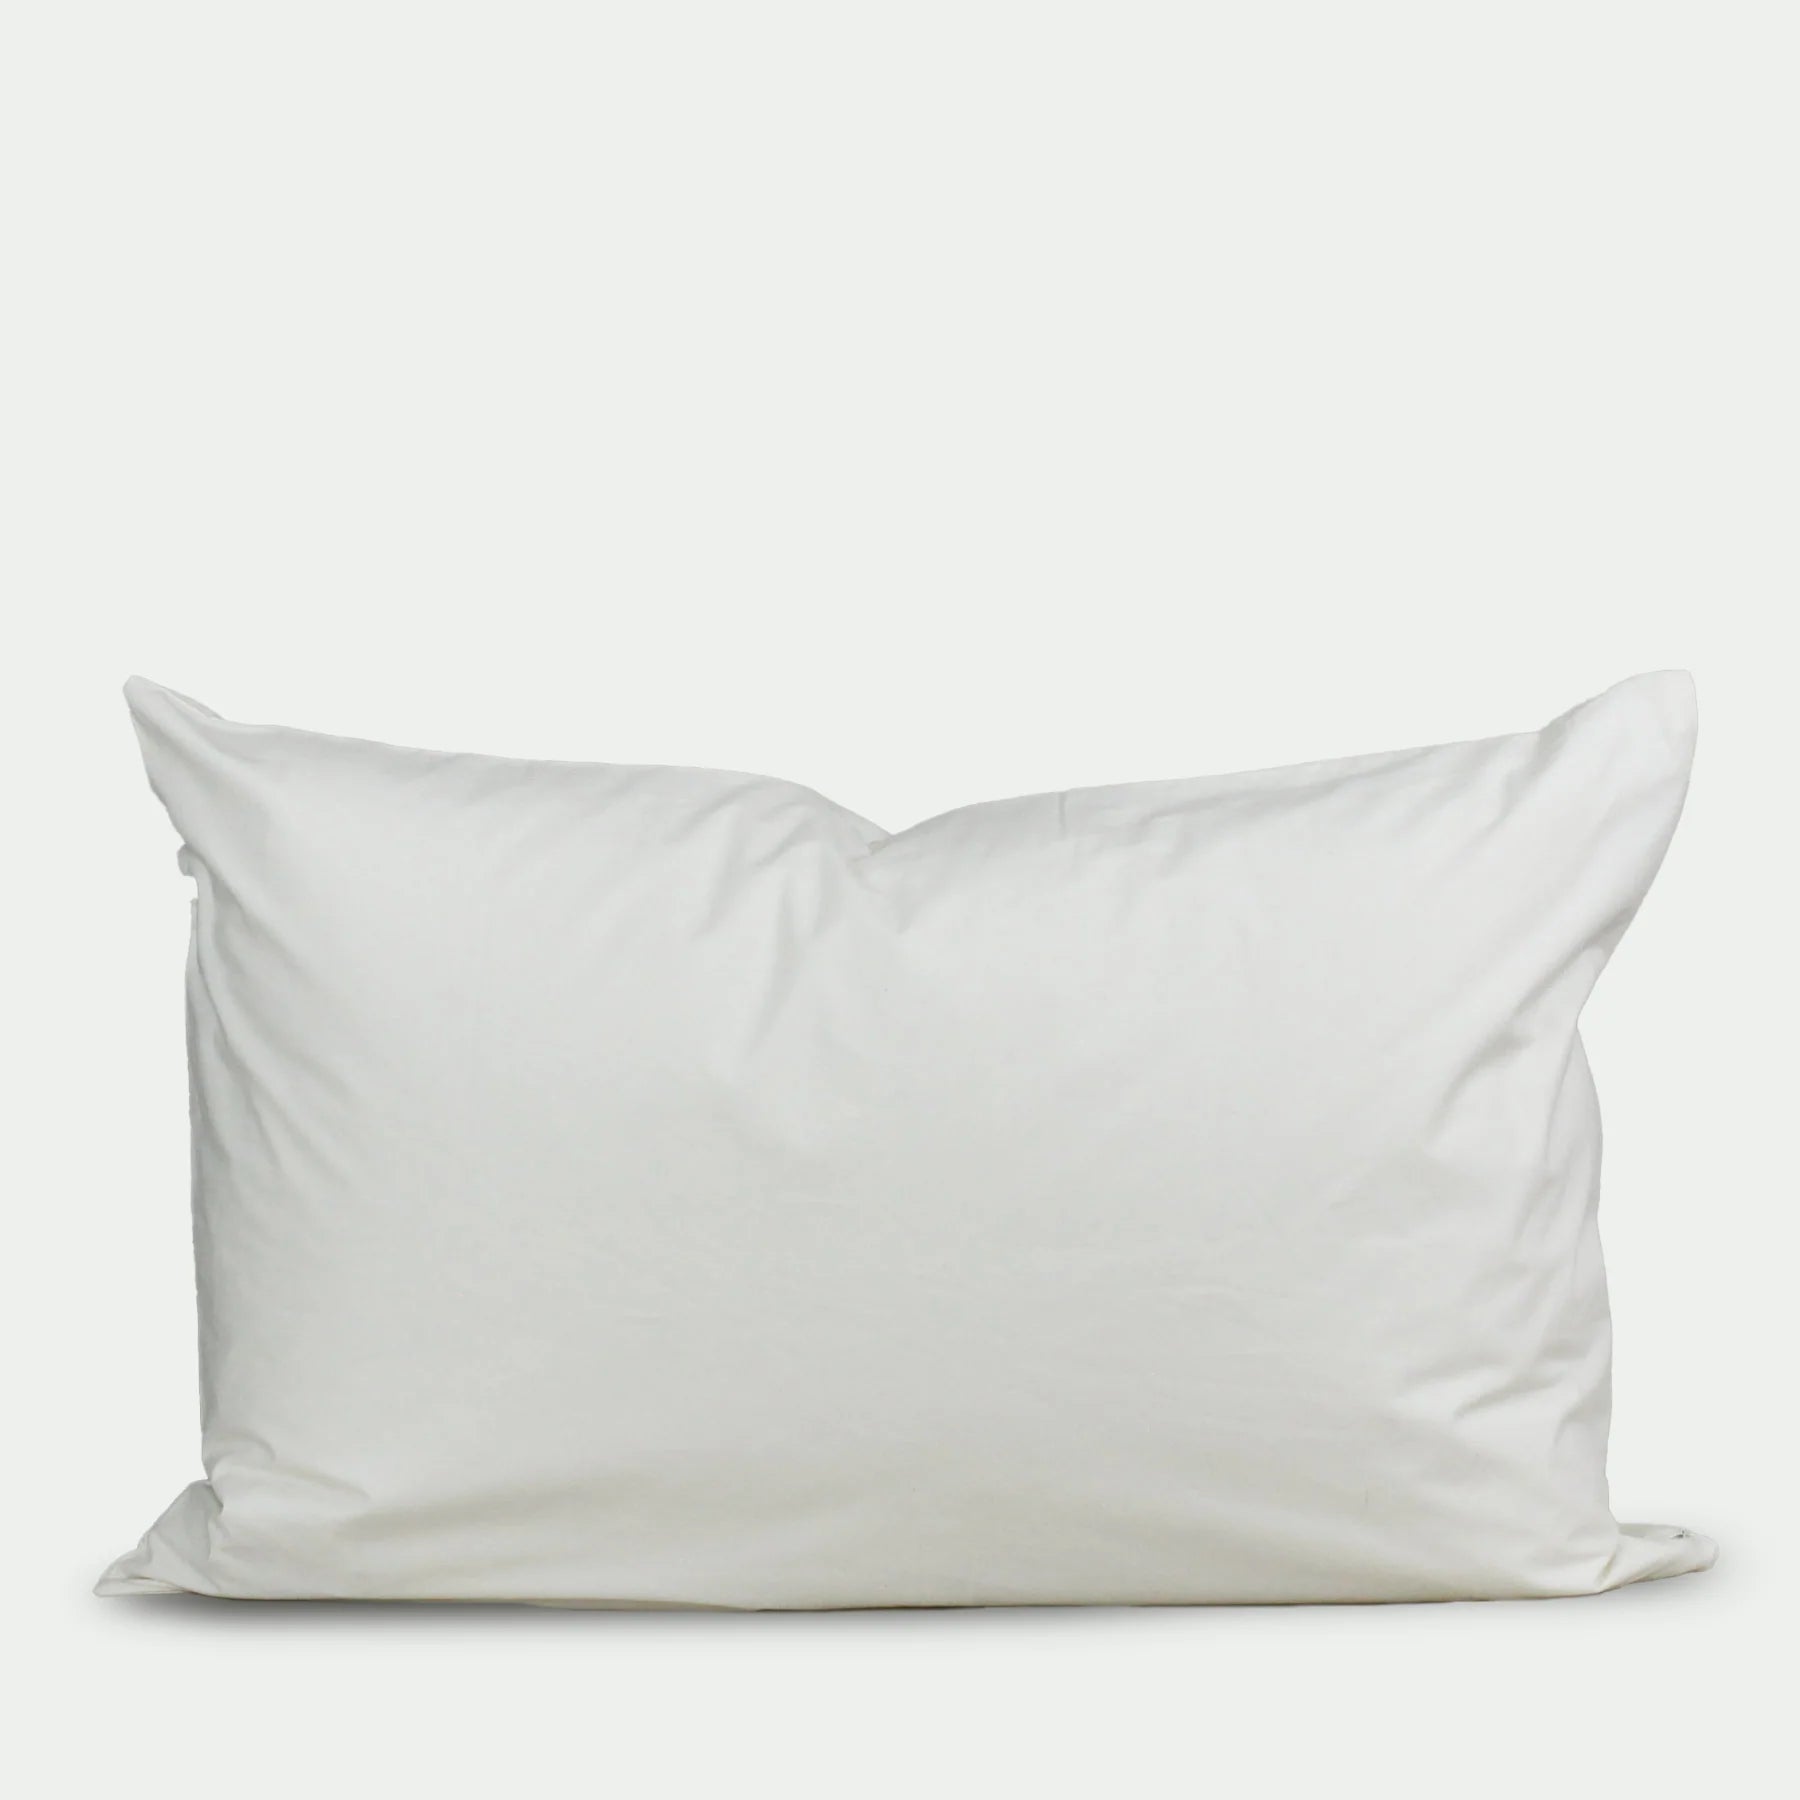 D.O.E.® Organic Cotton Pillow Protector